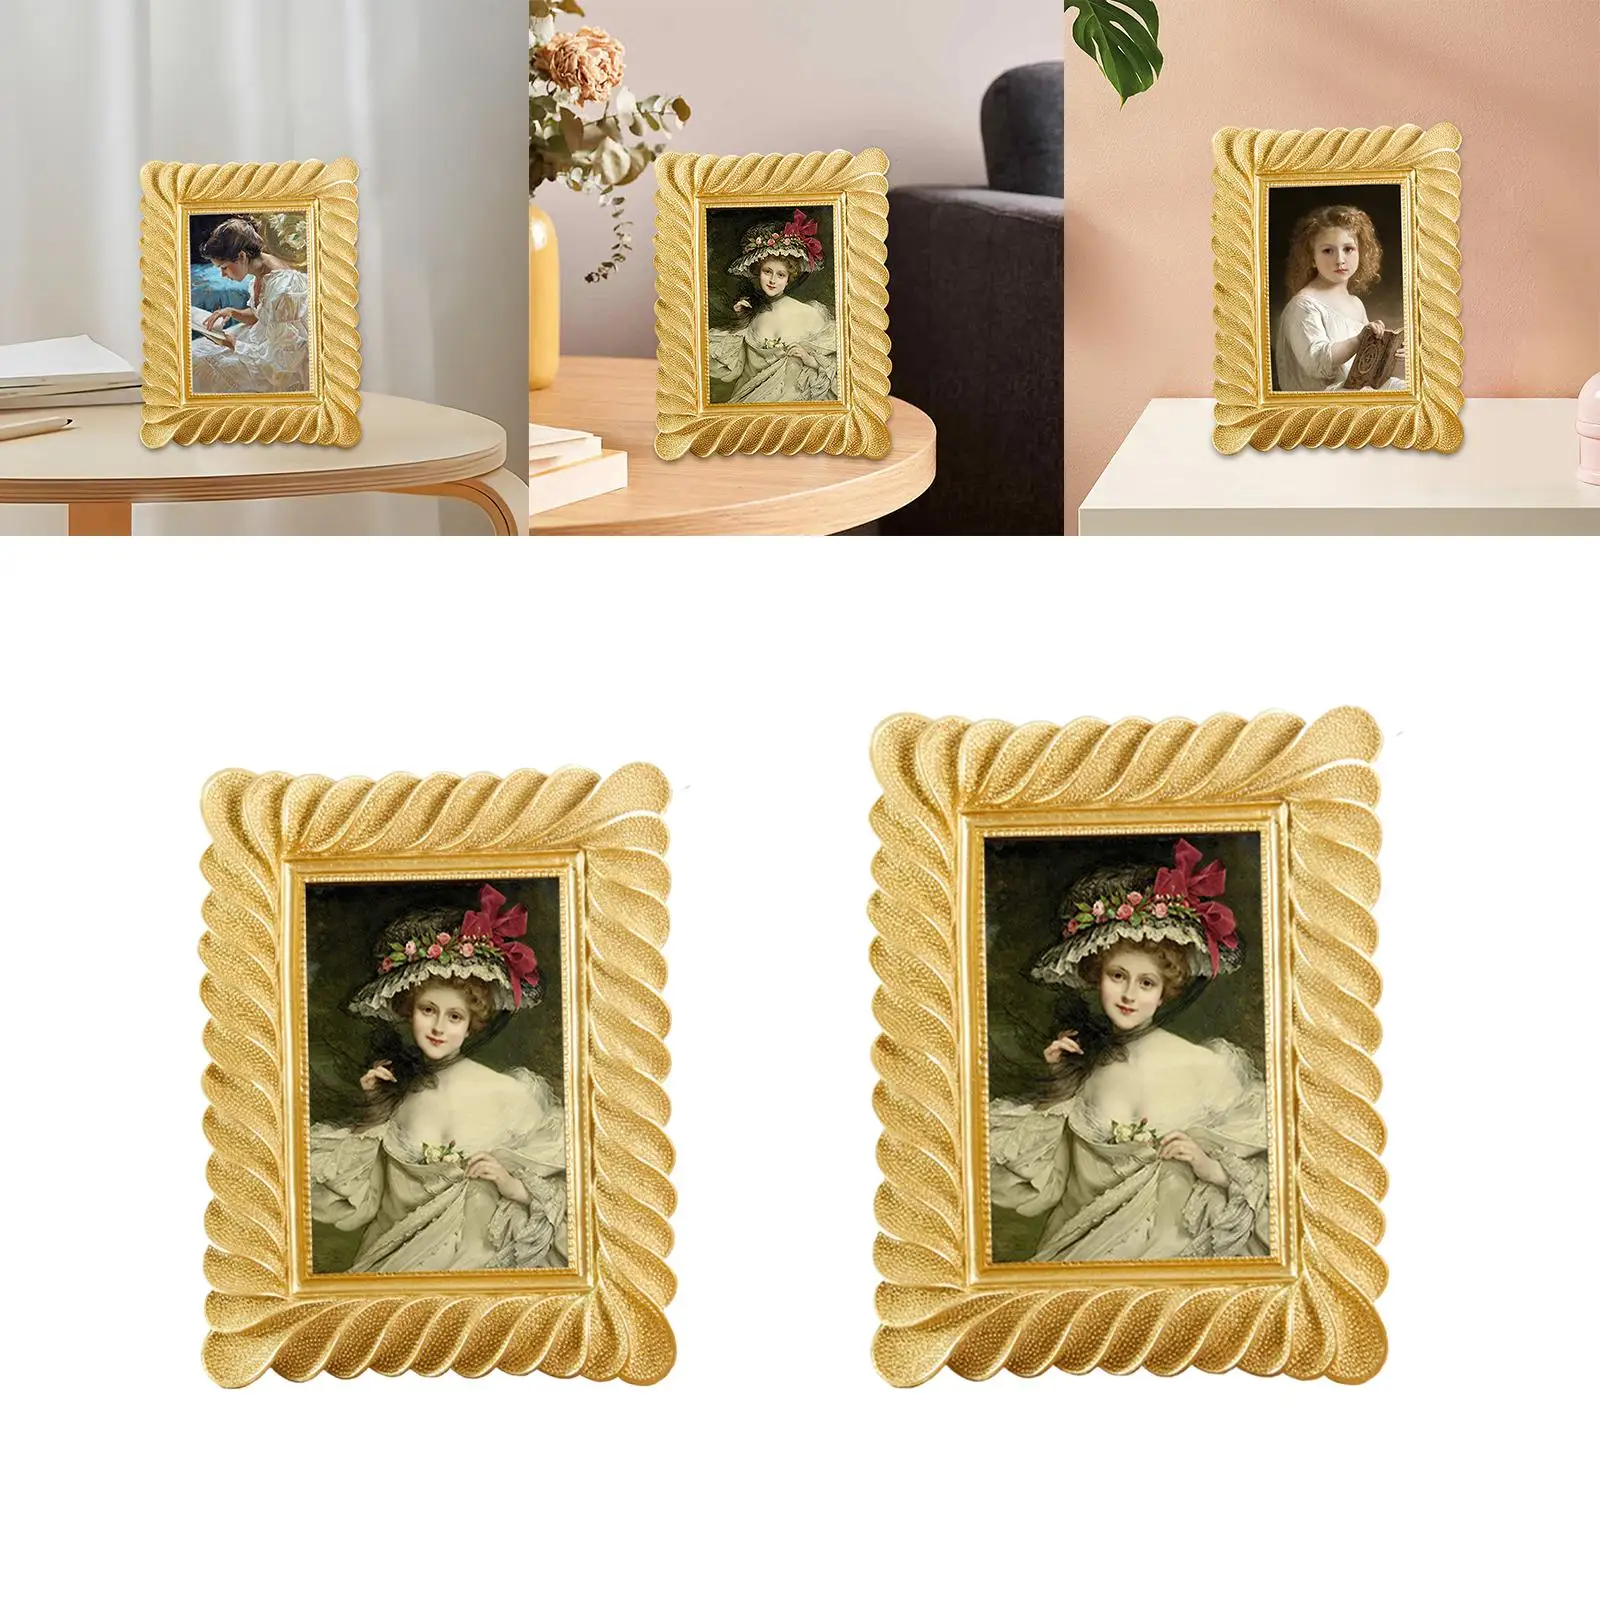 Embossed Rectangle Polyresin Photo Frame Elegant Photo Gallery Art Desktop European Style Picture Holder for Living Room Bedroom